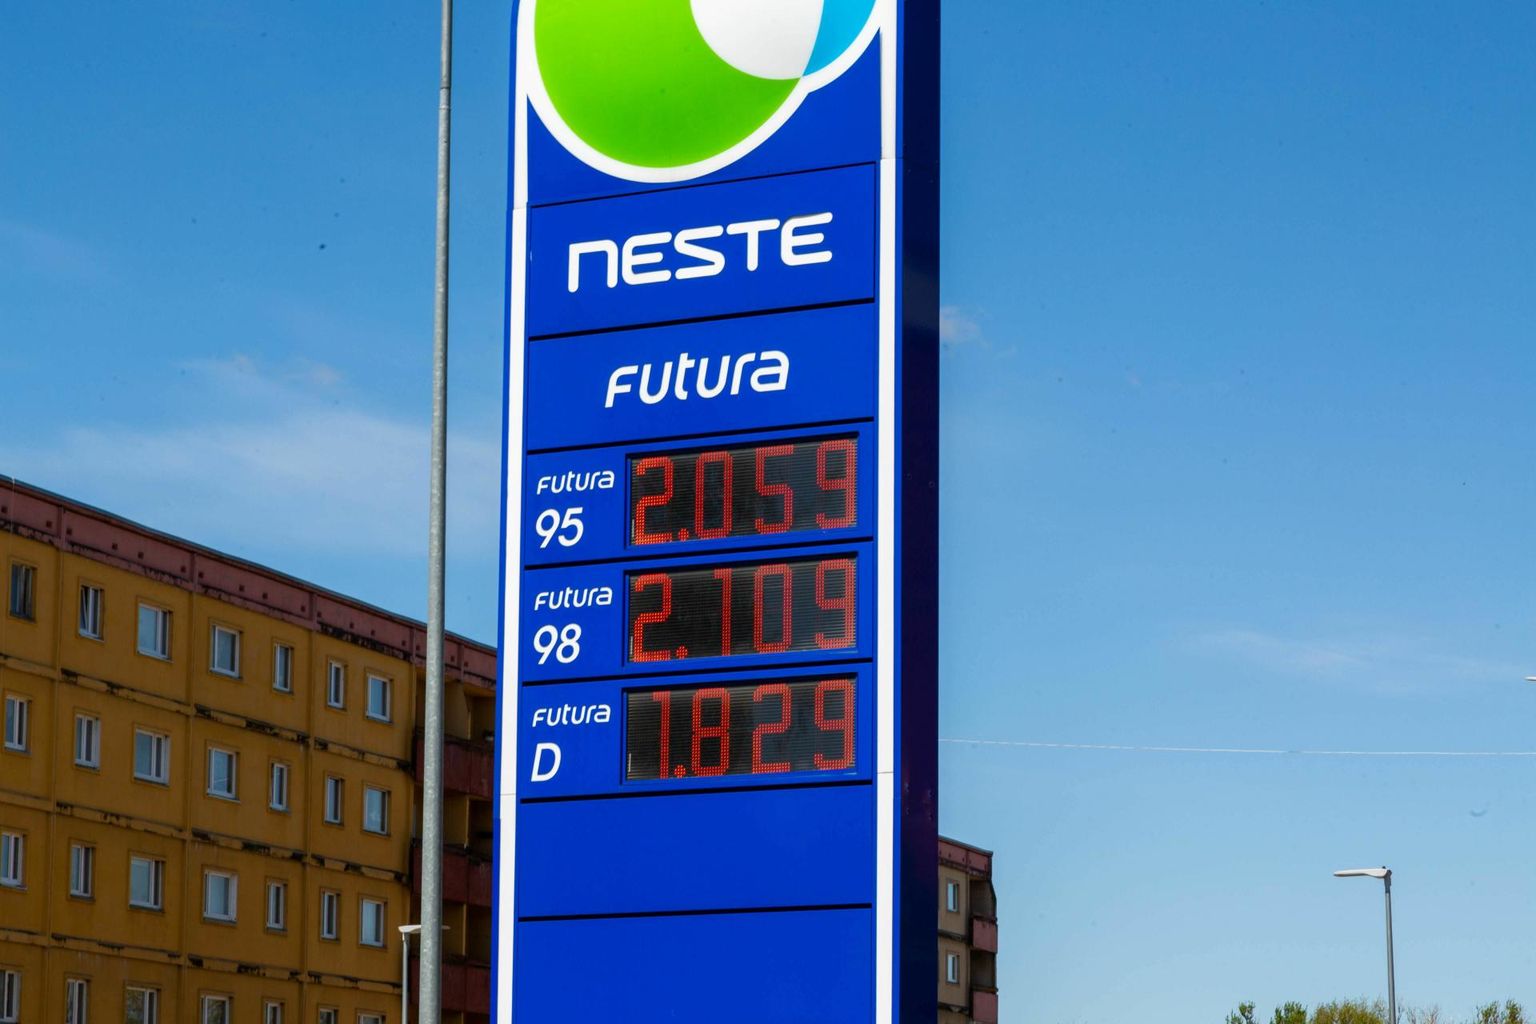 Kütustehindade rekordasemele kerkimisel on oluline roll dollari kallinemisel euro suhtes.

 